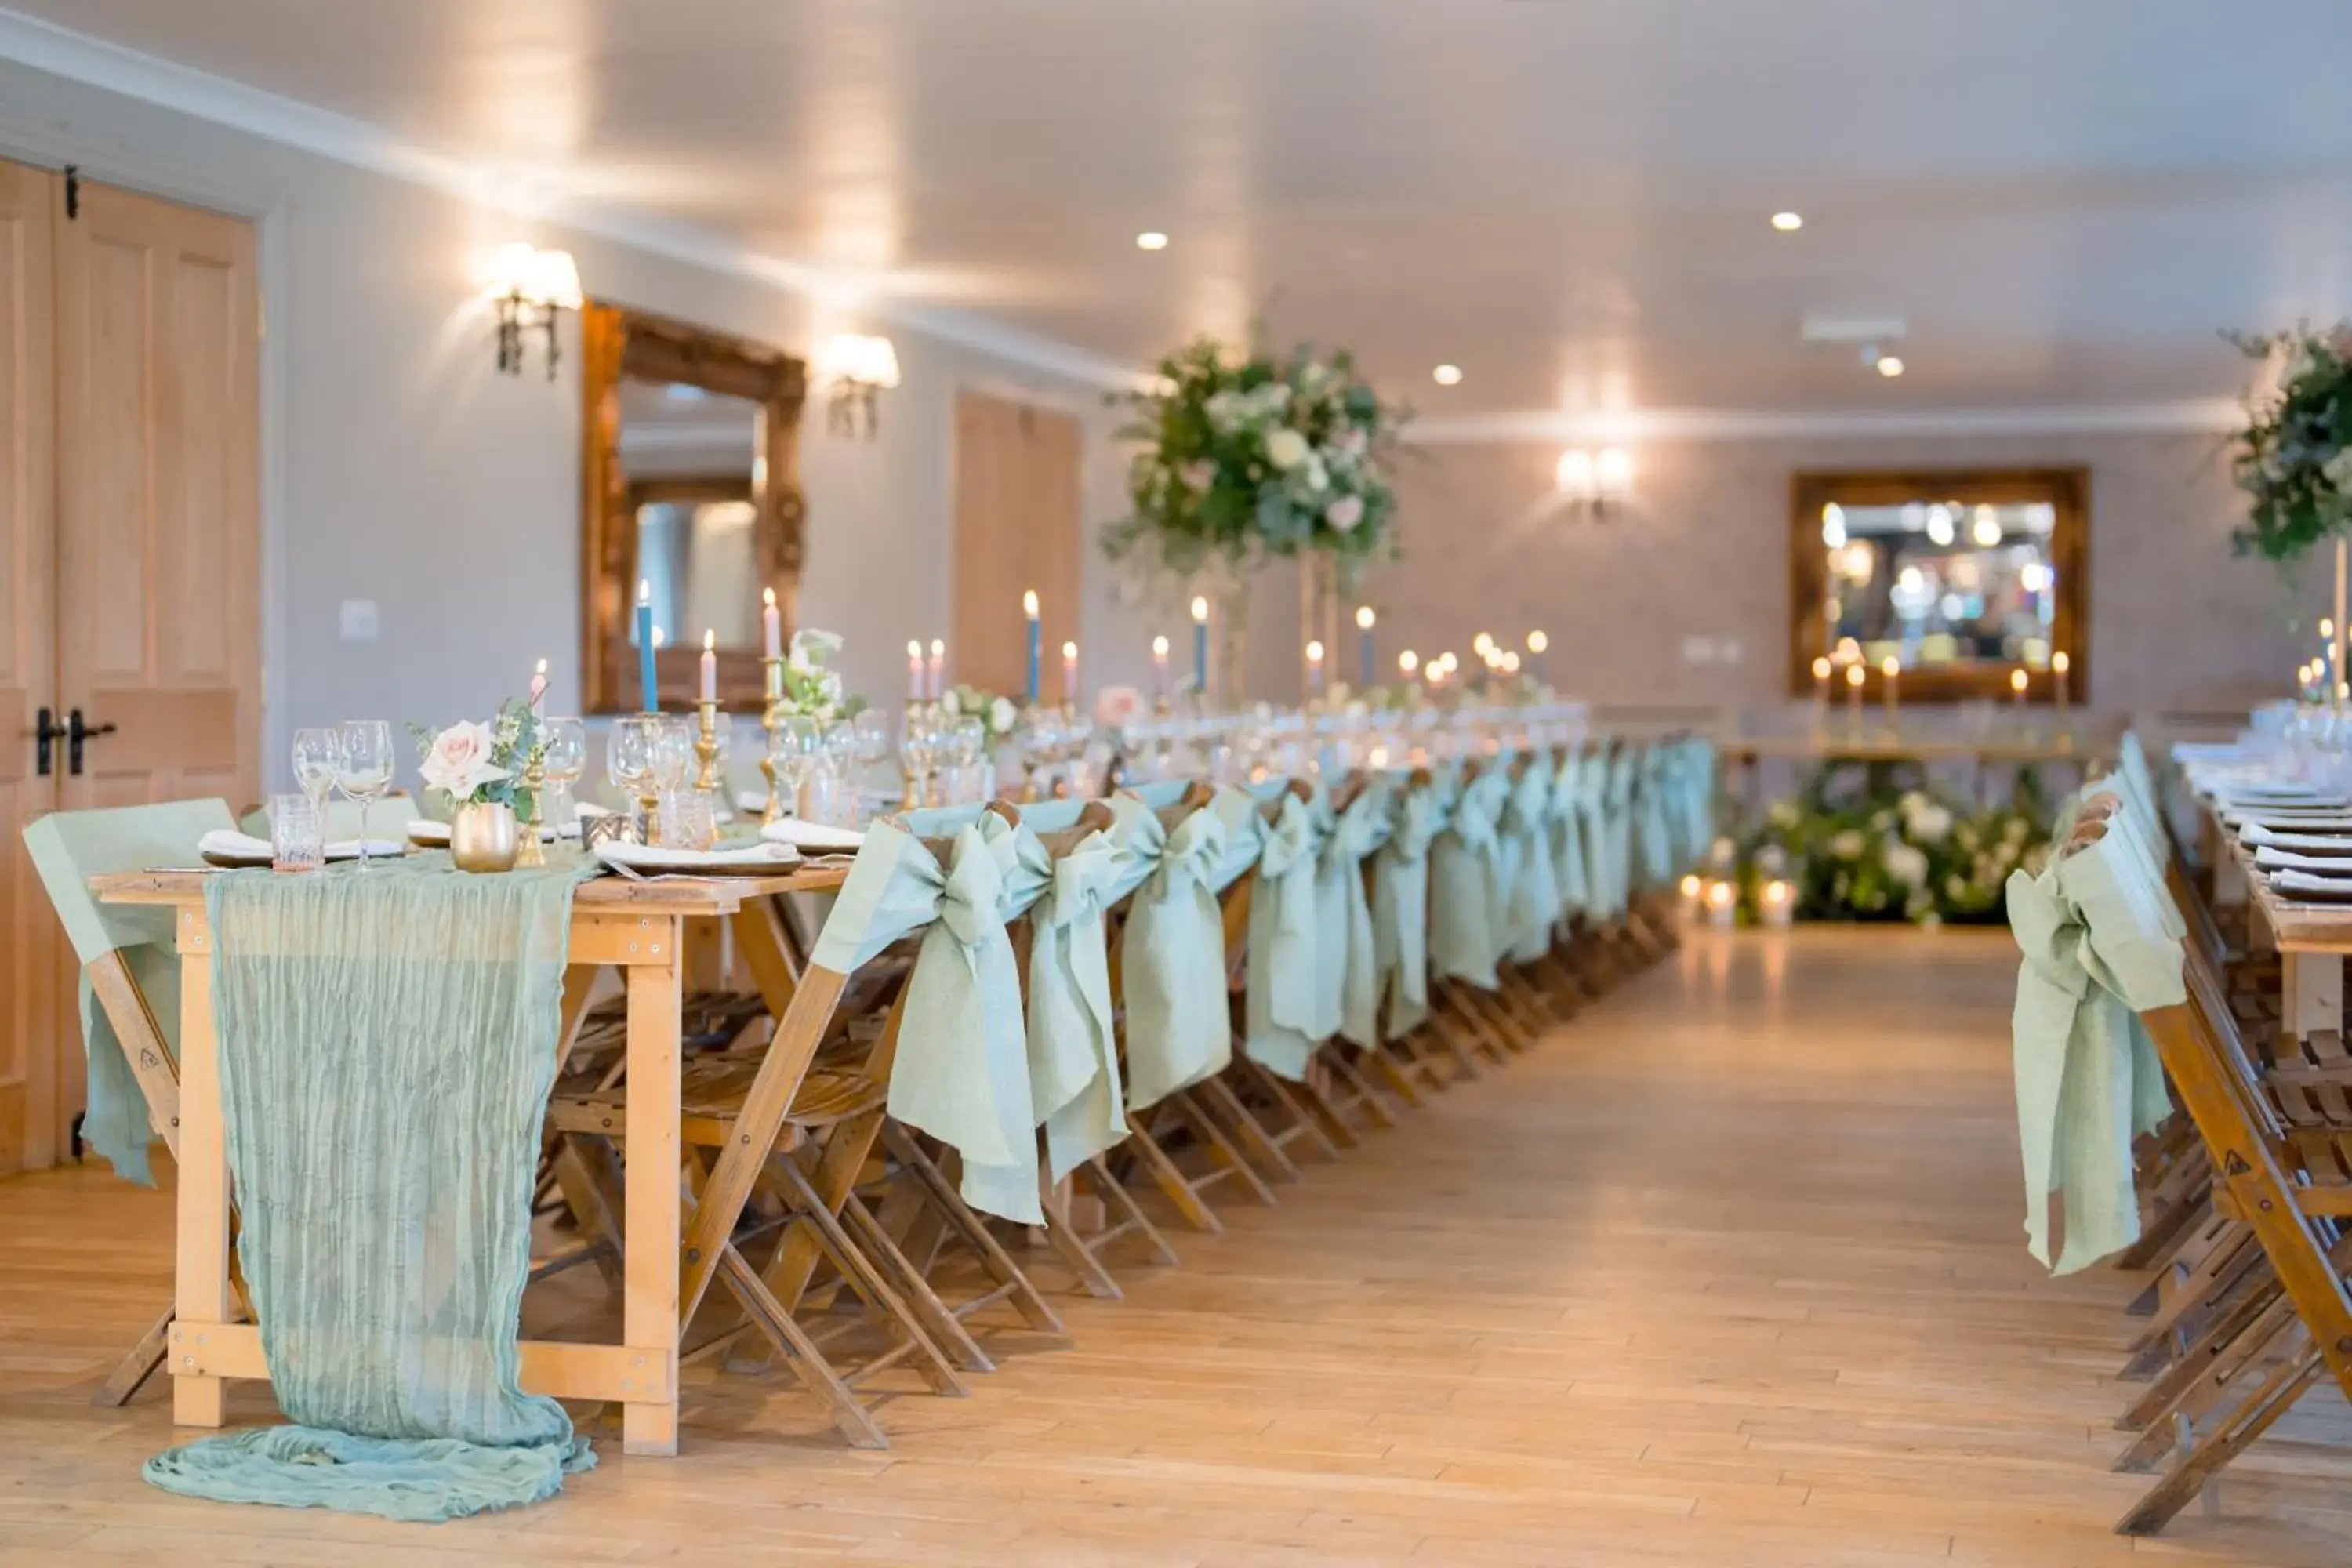 Banquet/Function facilities, Banquet Facilities in Tottington Manor Hotel